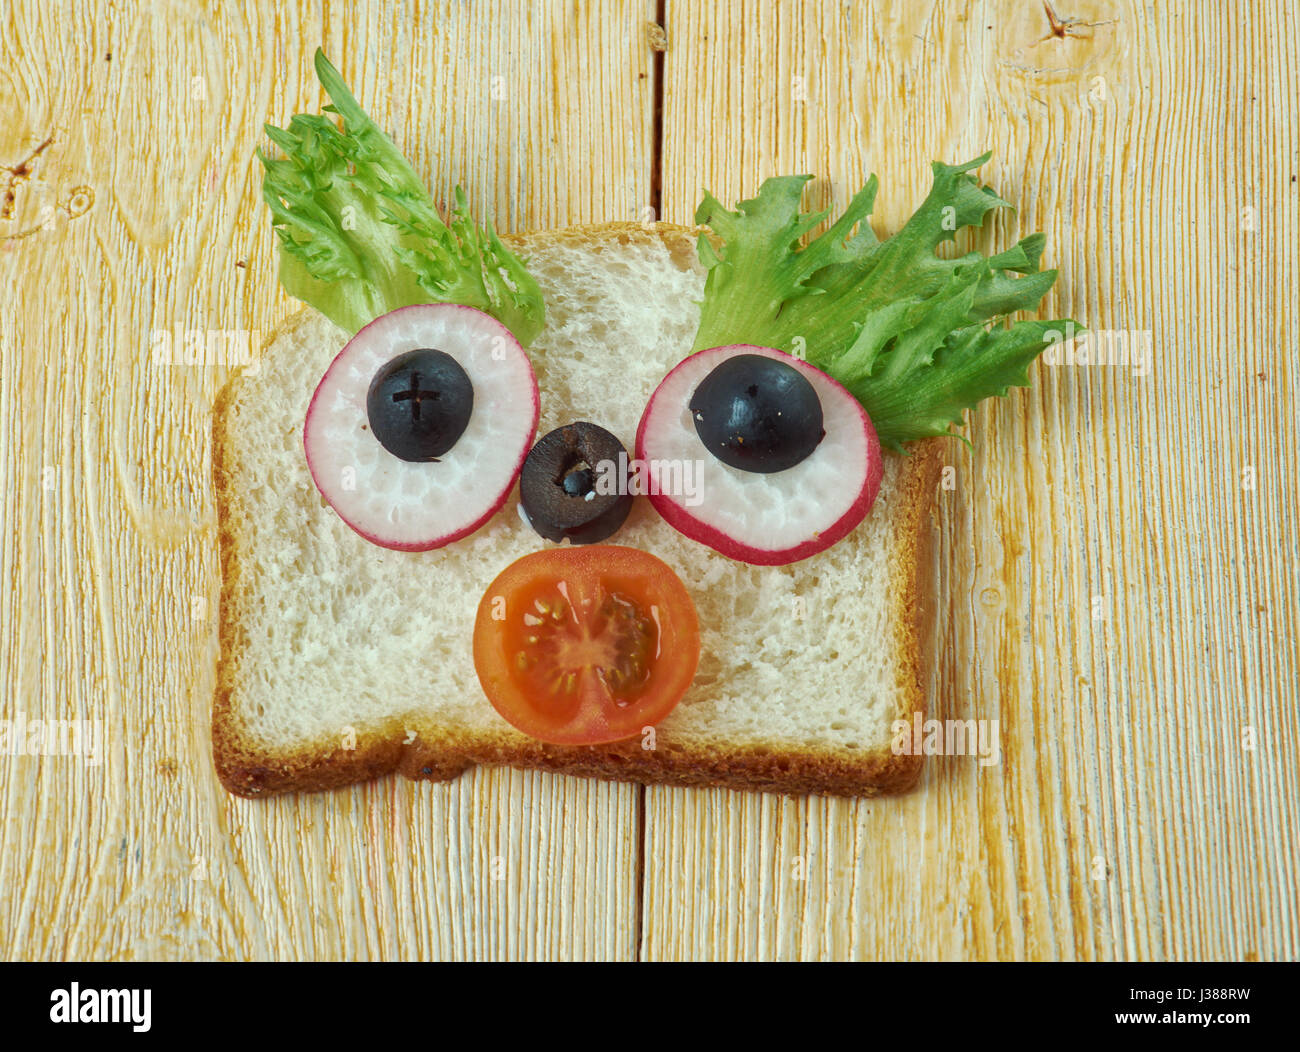 Cucina creativa concetto - sandwich divertenti per bambini uomo fatto di pane, toast, salsiccia, verdure Foto Stock